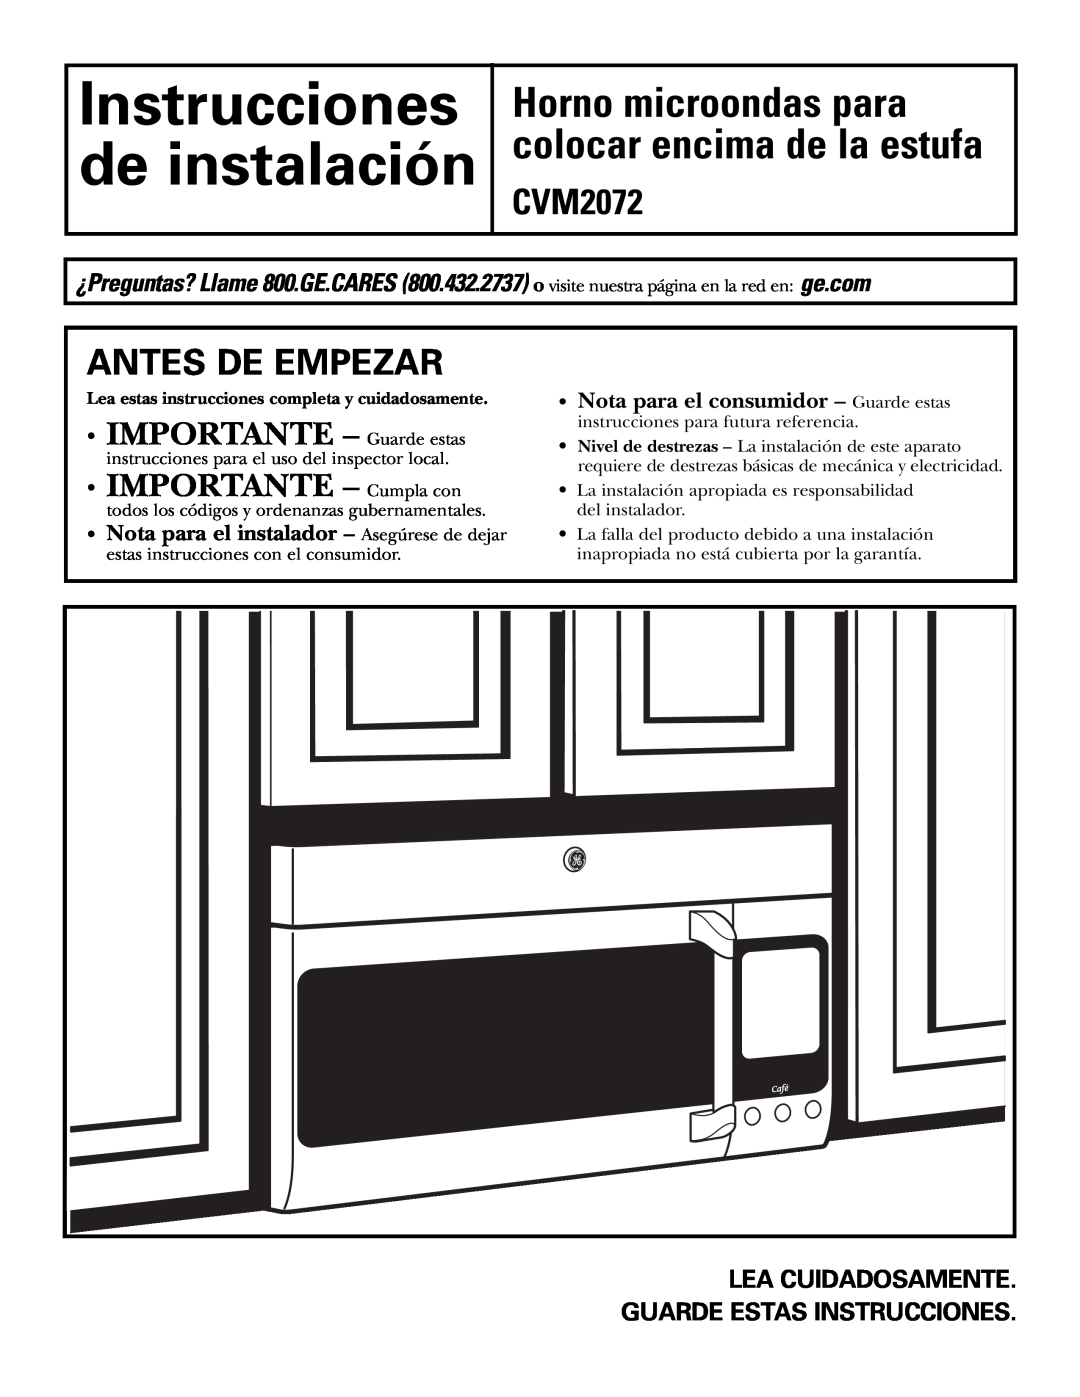 GE warranty Instrucciones de instalación, Horno microondas para colocar encima de la estufa CVM2072, Antes De Empezar 